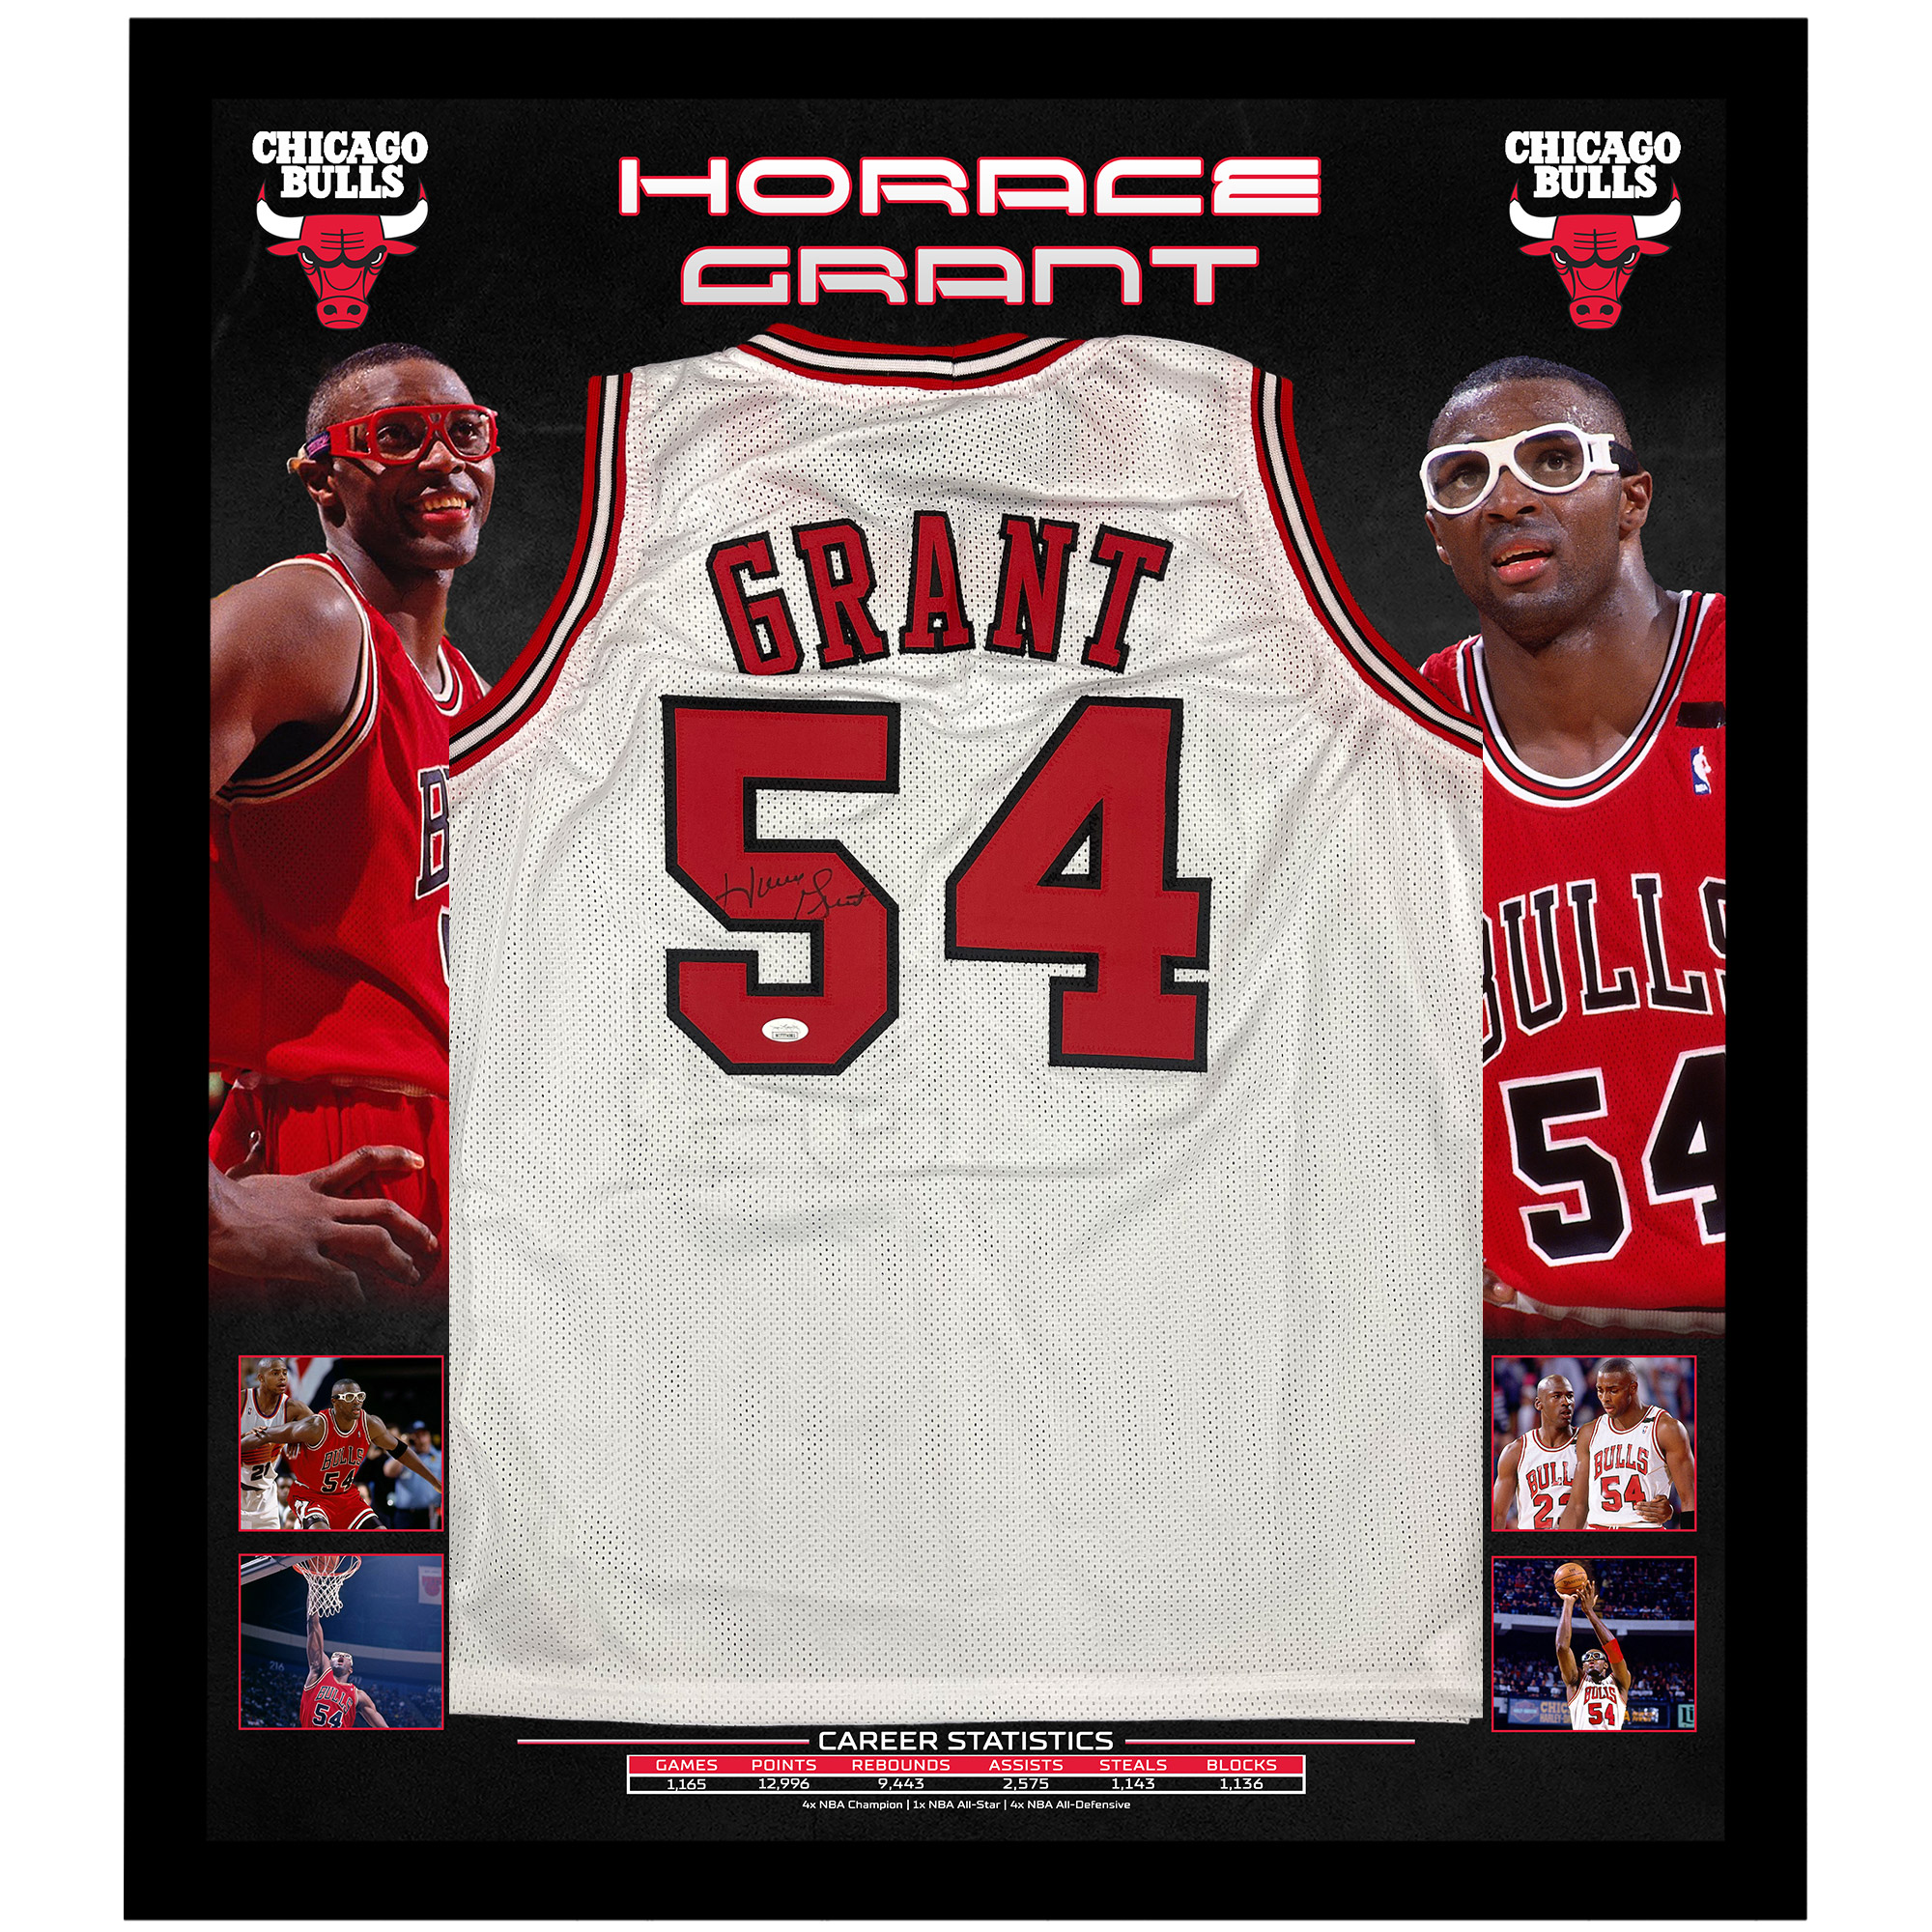 Basketball – Horace Grant Signed & Framed Chicago Bulls Jer...